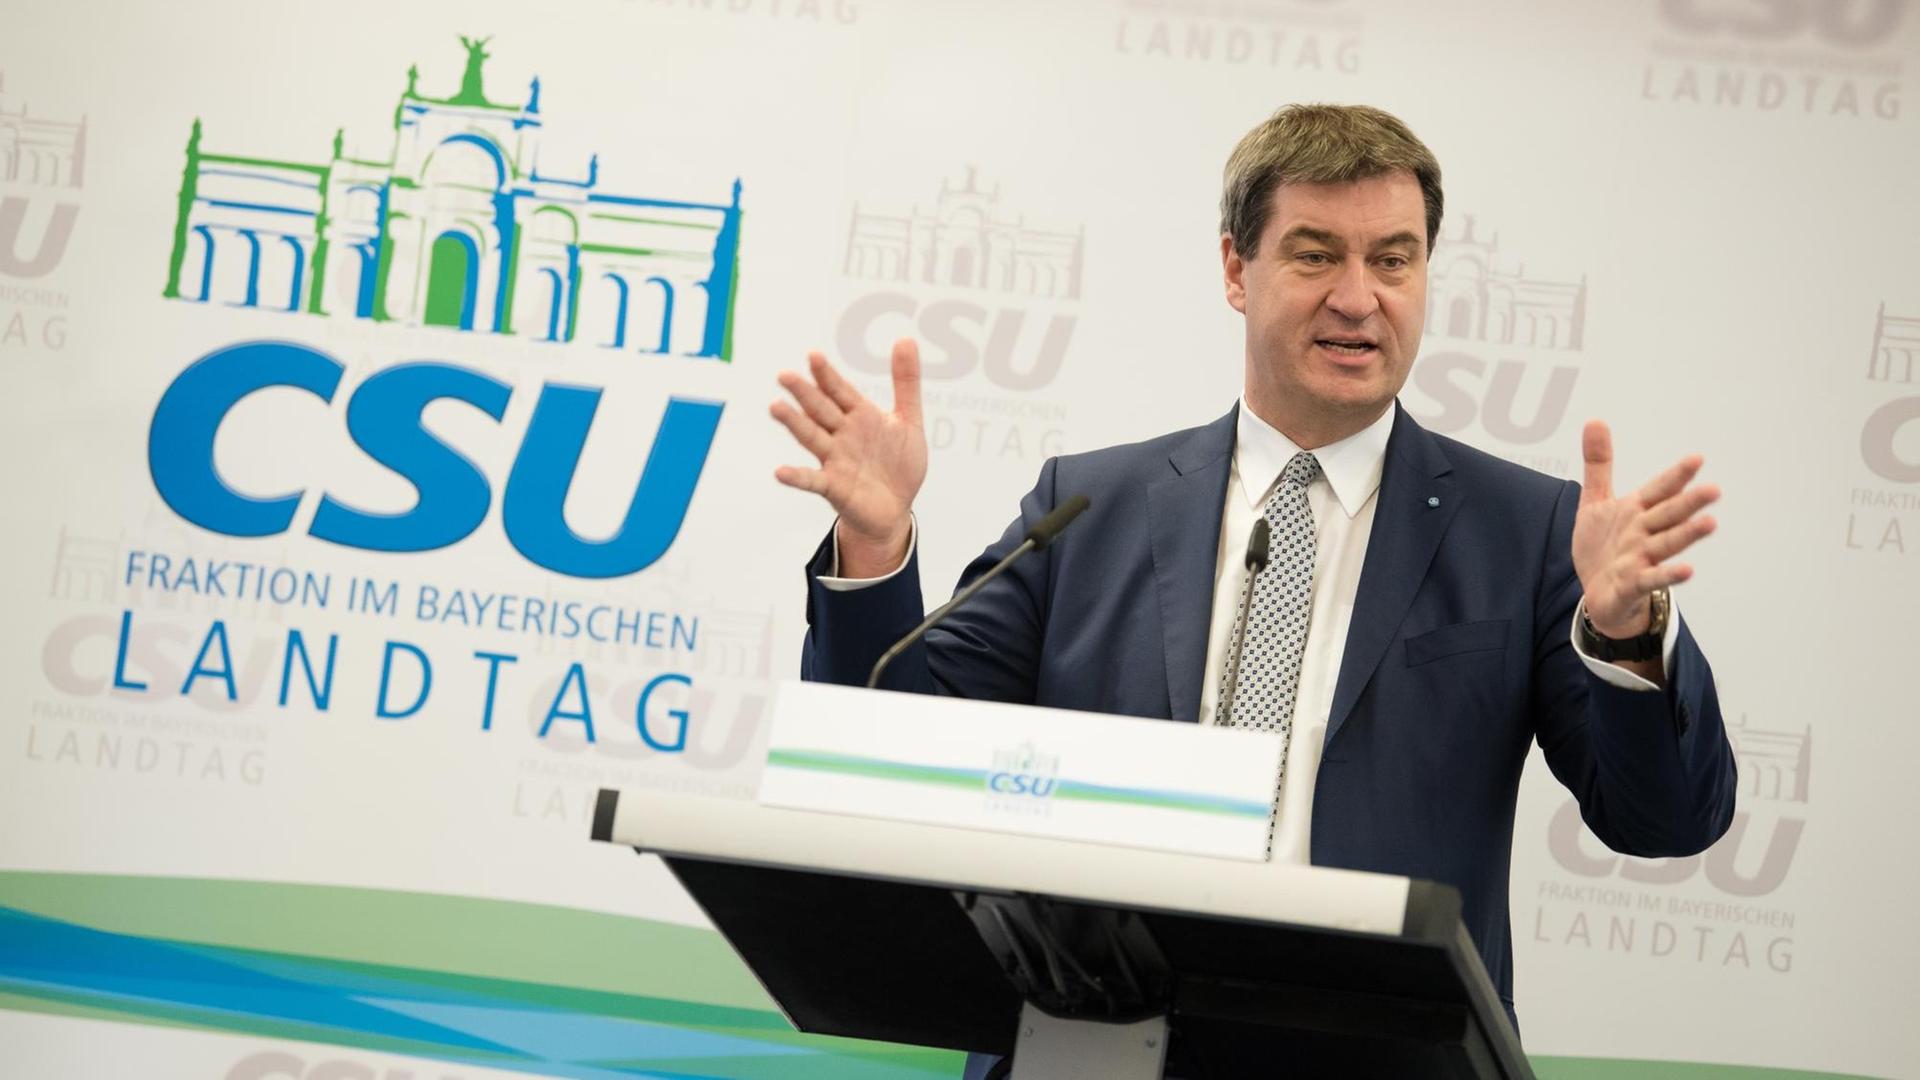 Der bayerische Finanzminister Markus Söder (CSU) spricht am 18.01.2018 auf Kloster Banz bei Bad Staffelstein (Bayern) bei einer Pressekonferenz mit den anwesenden Journalisten.